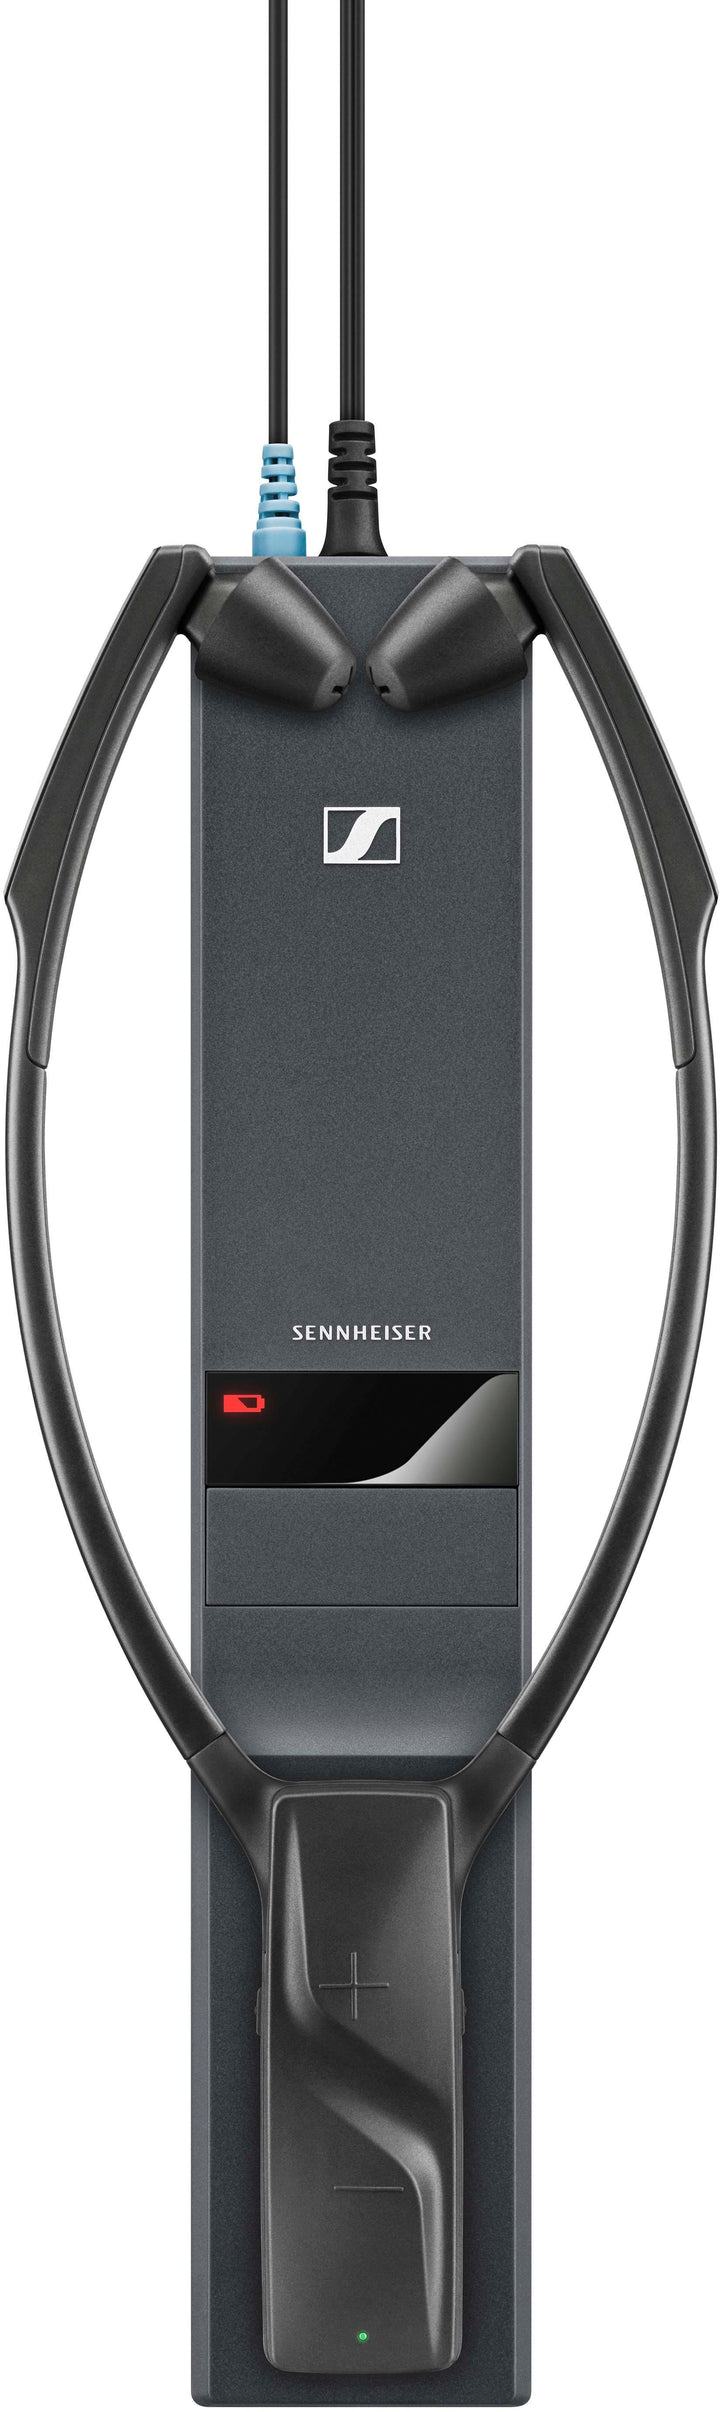 Sennheiser - RS 2000 Digital Wireless Headphone for TV Listening - Black_3